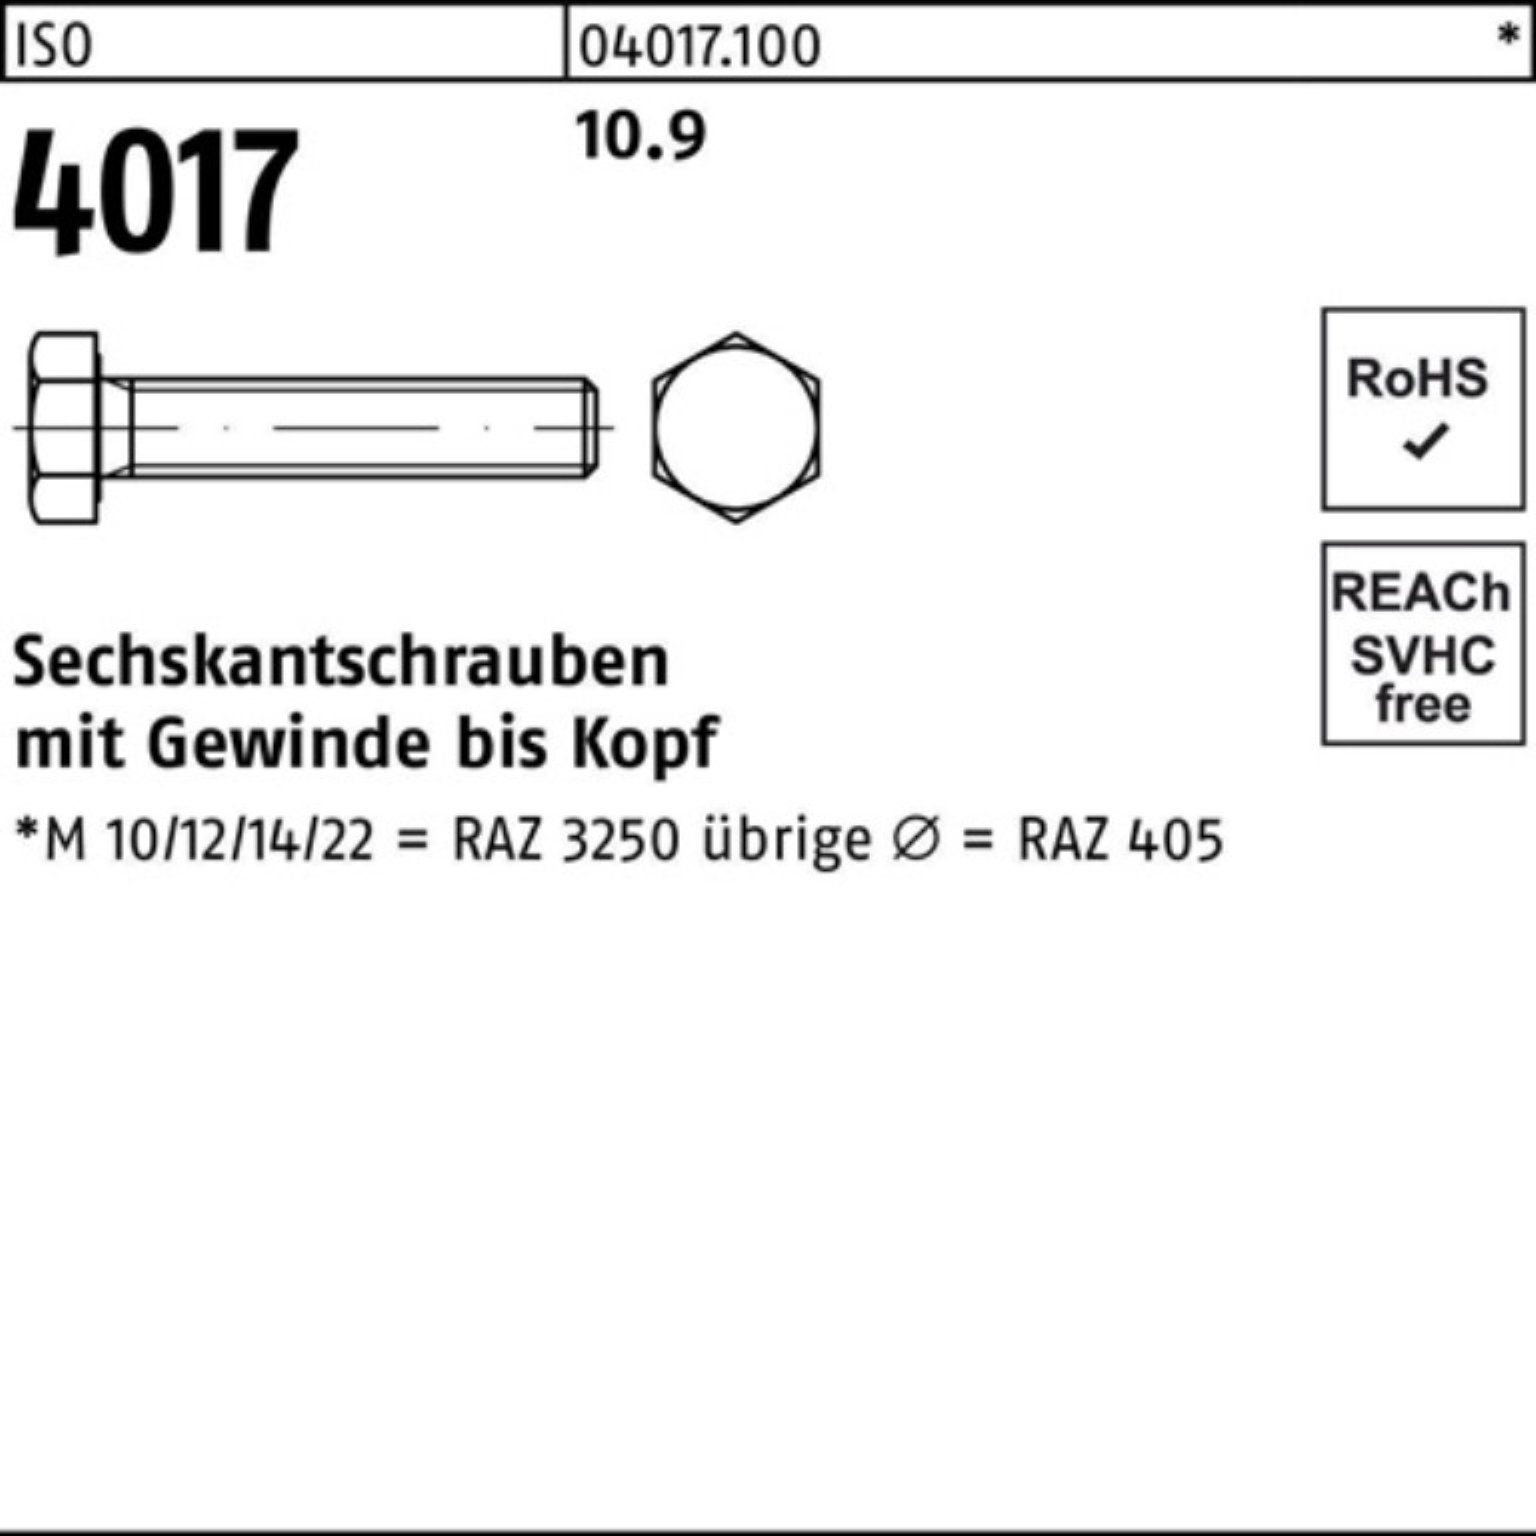 Sechskantschraube Stück ISO Bufab VG 100er Sechskantschraube M30x 10.9 Pack 90 1 ISO 4017 401